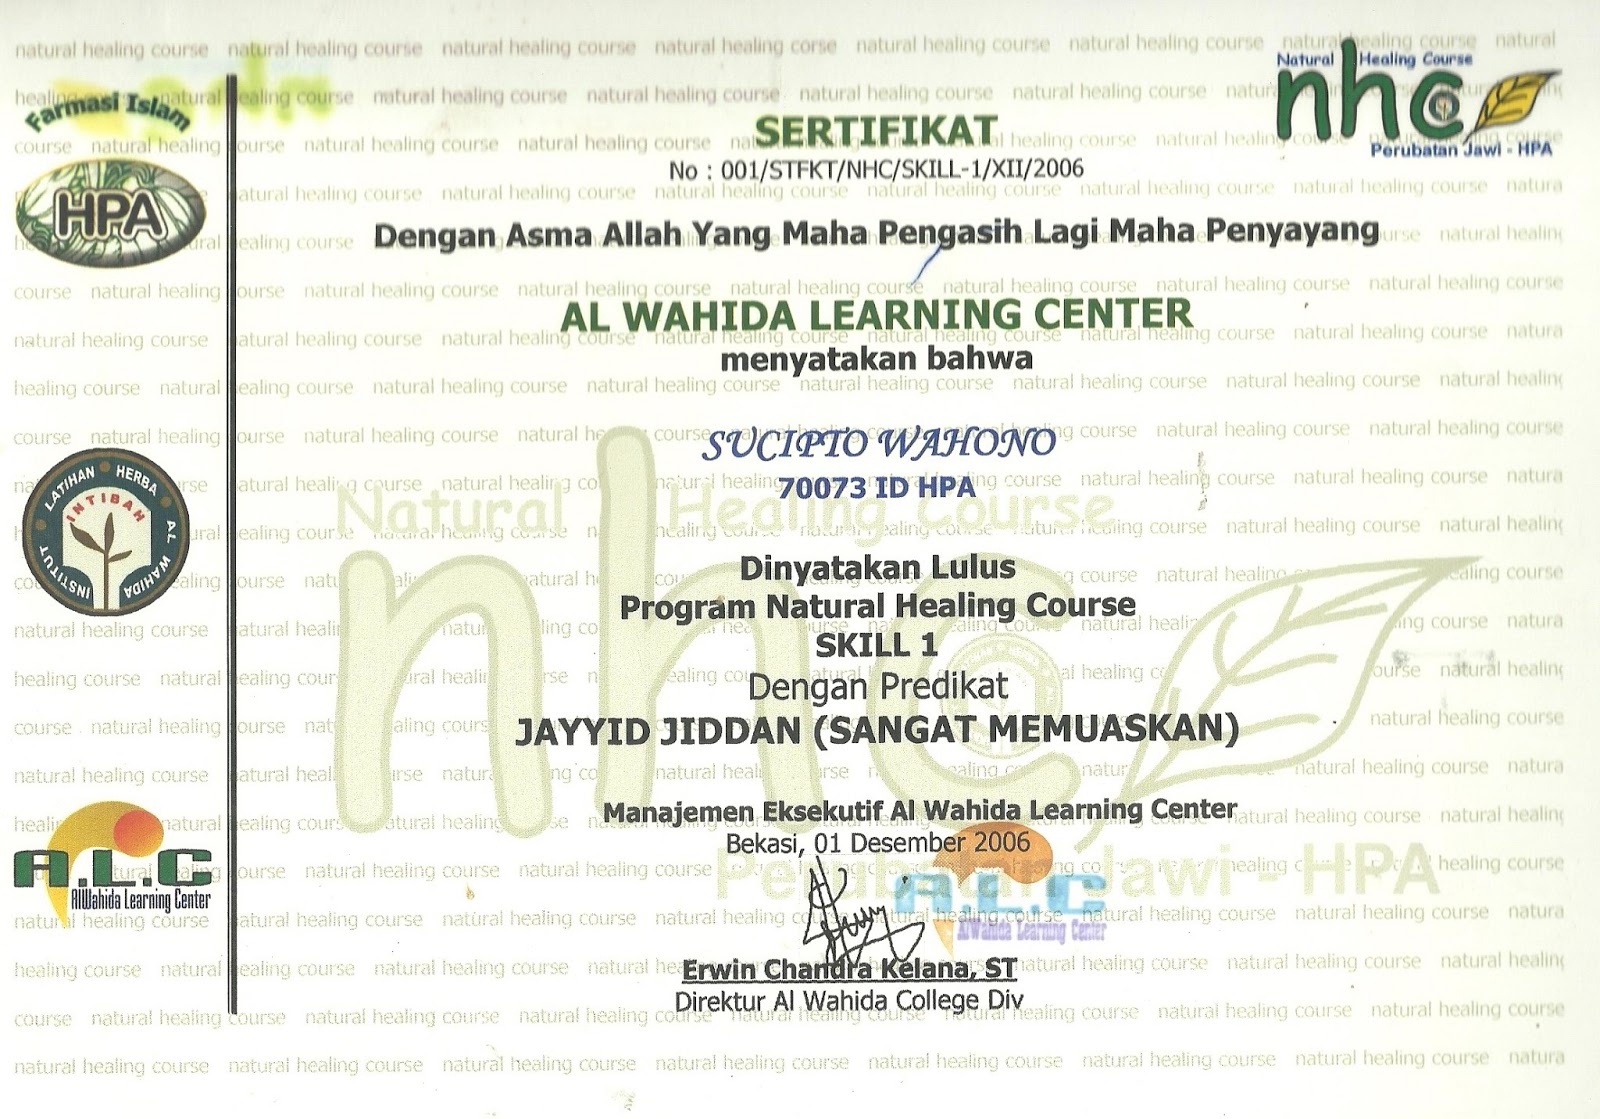 RUMAH SEHAT CIPTO HUSODO: sertifikat Pelatihan